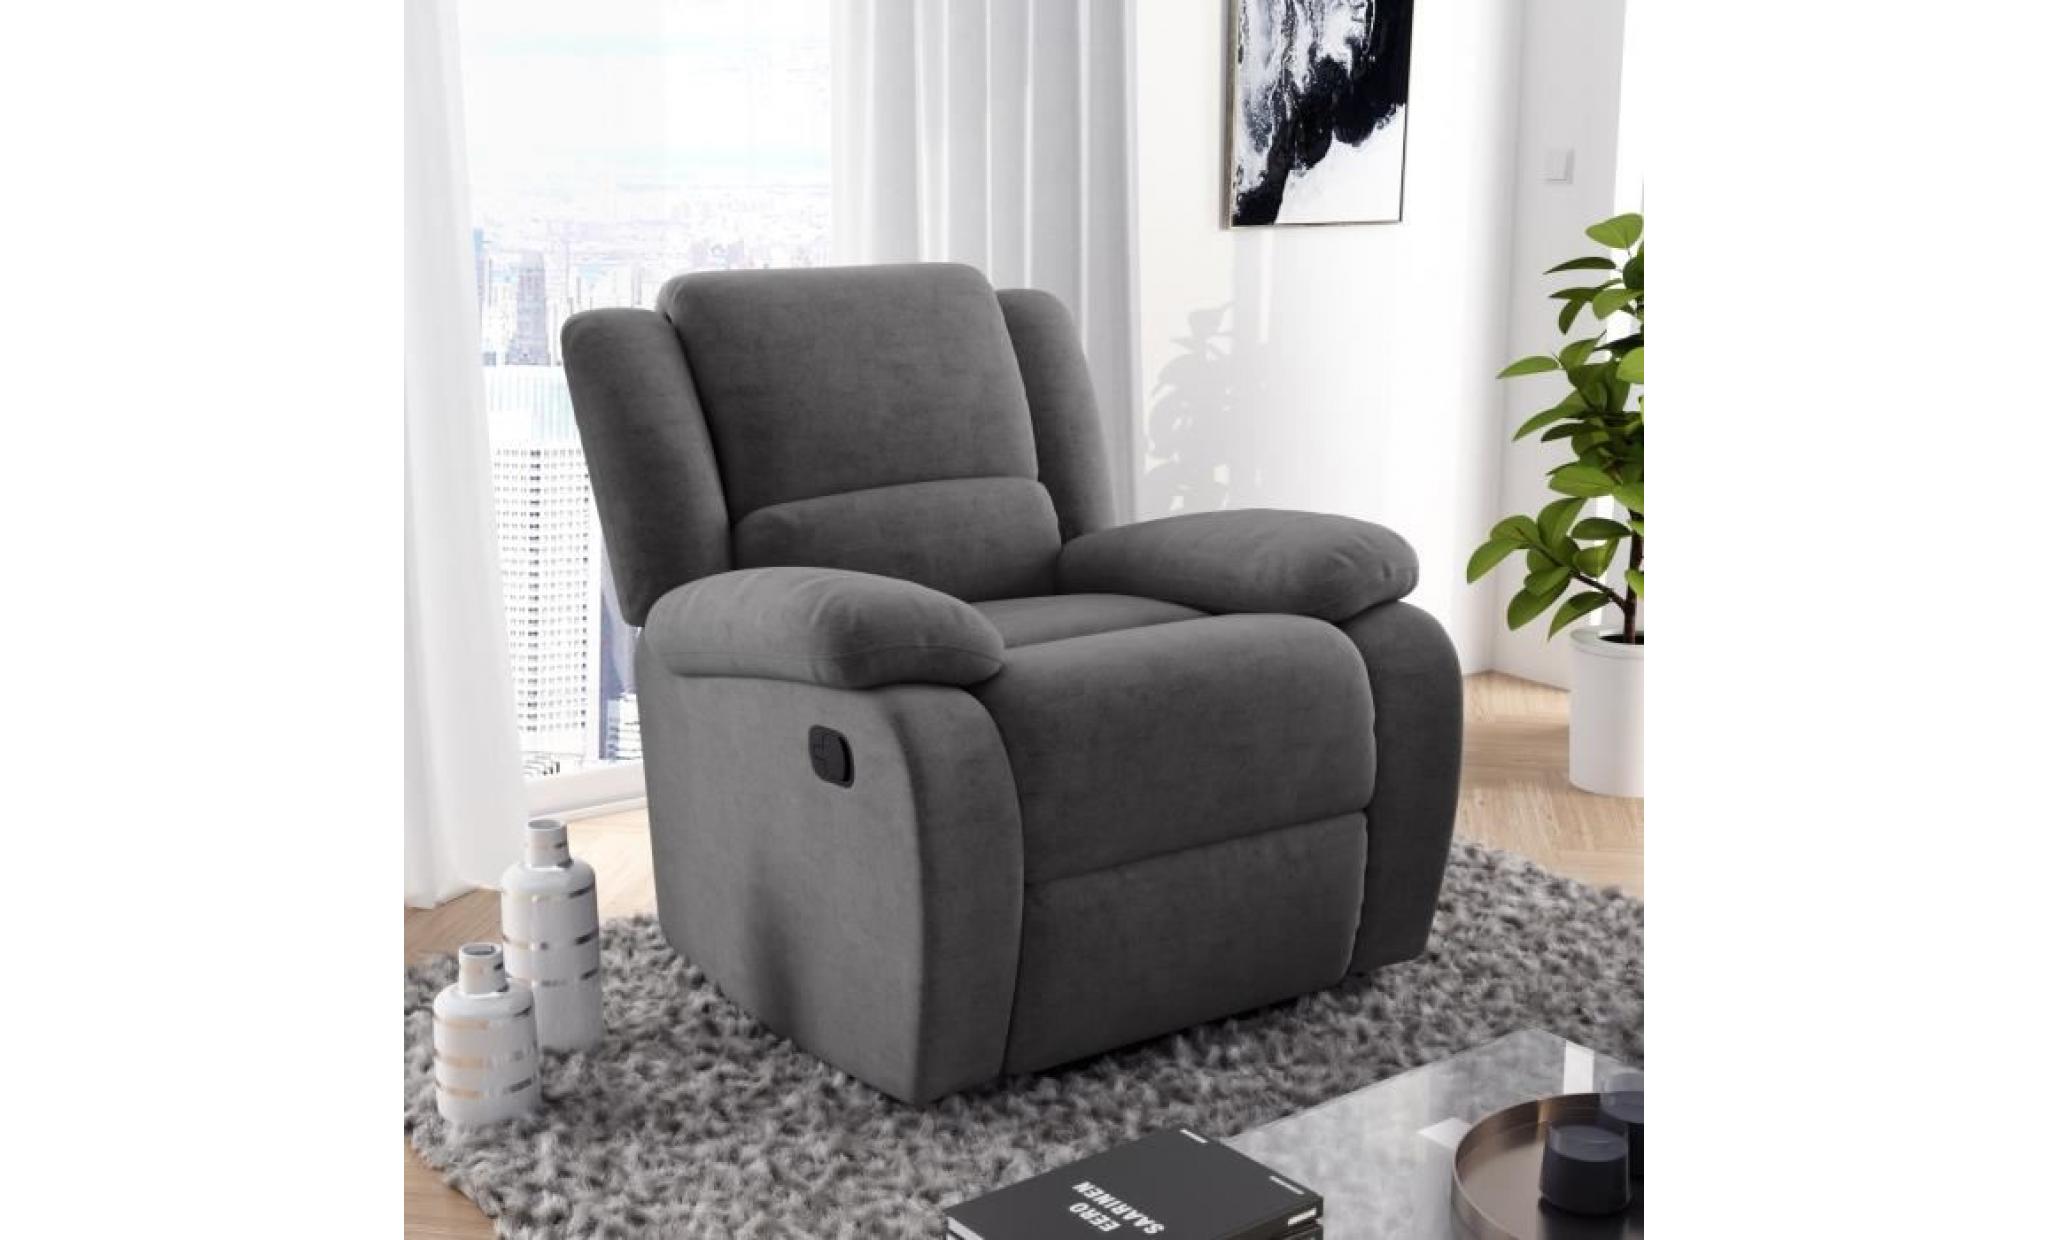 relax fauteuil relaxation   tissu gris   style contemporain   l 86 x p 90 cm pas cher